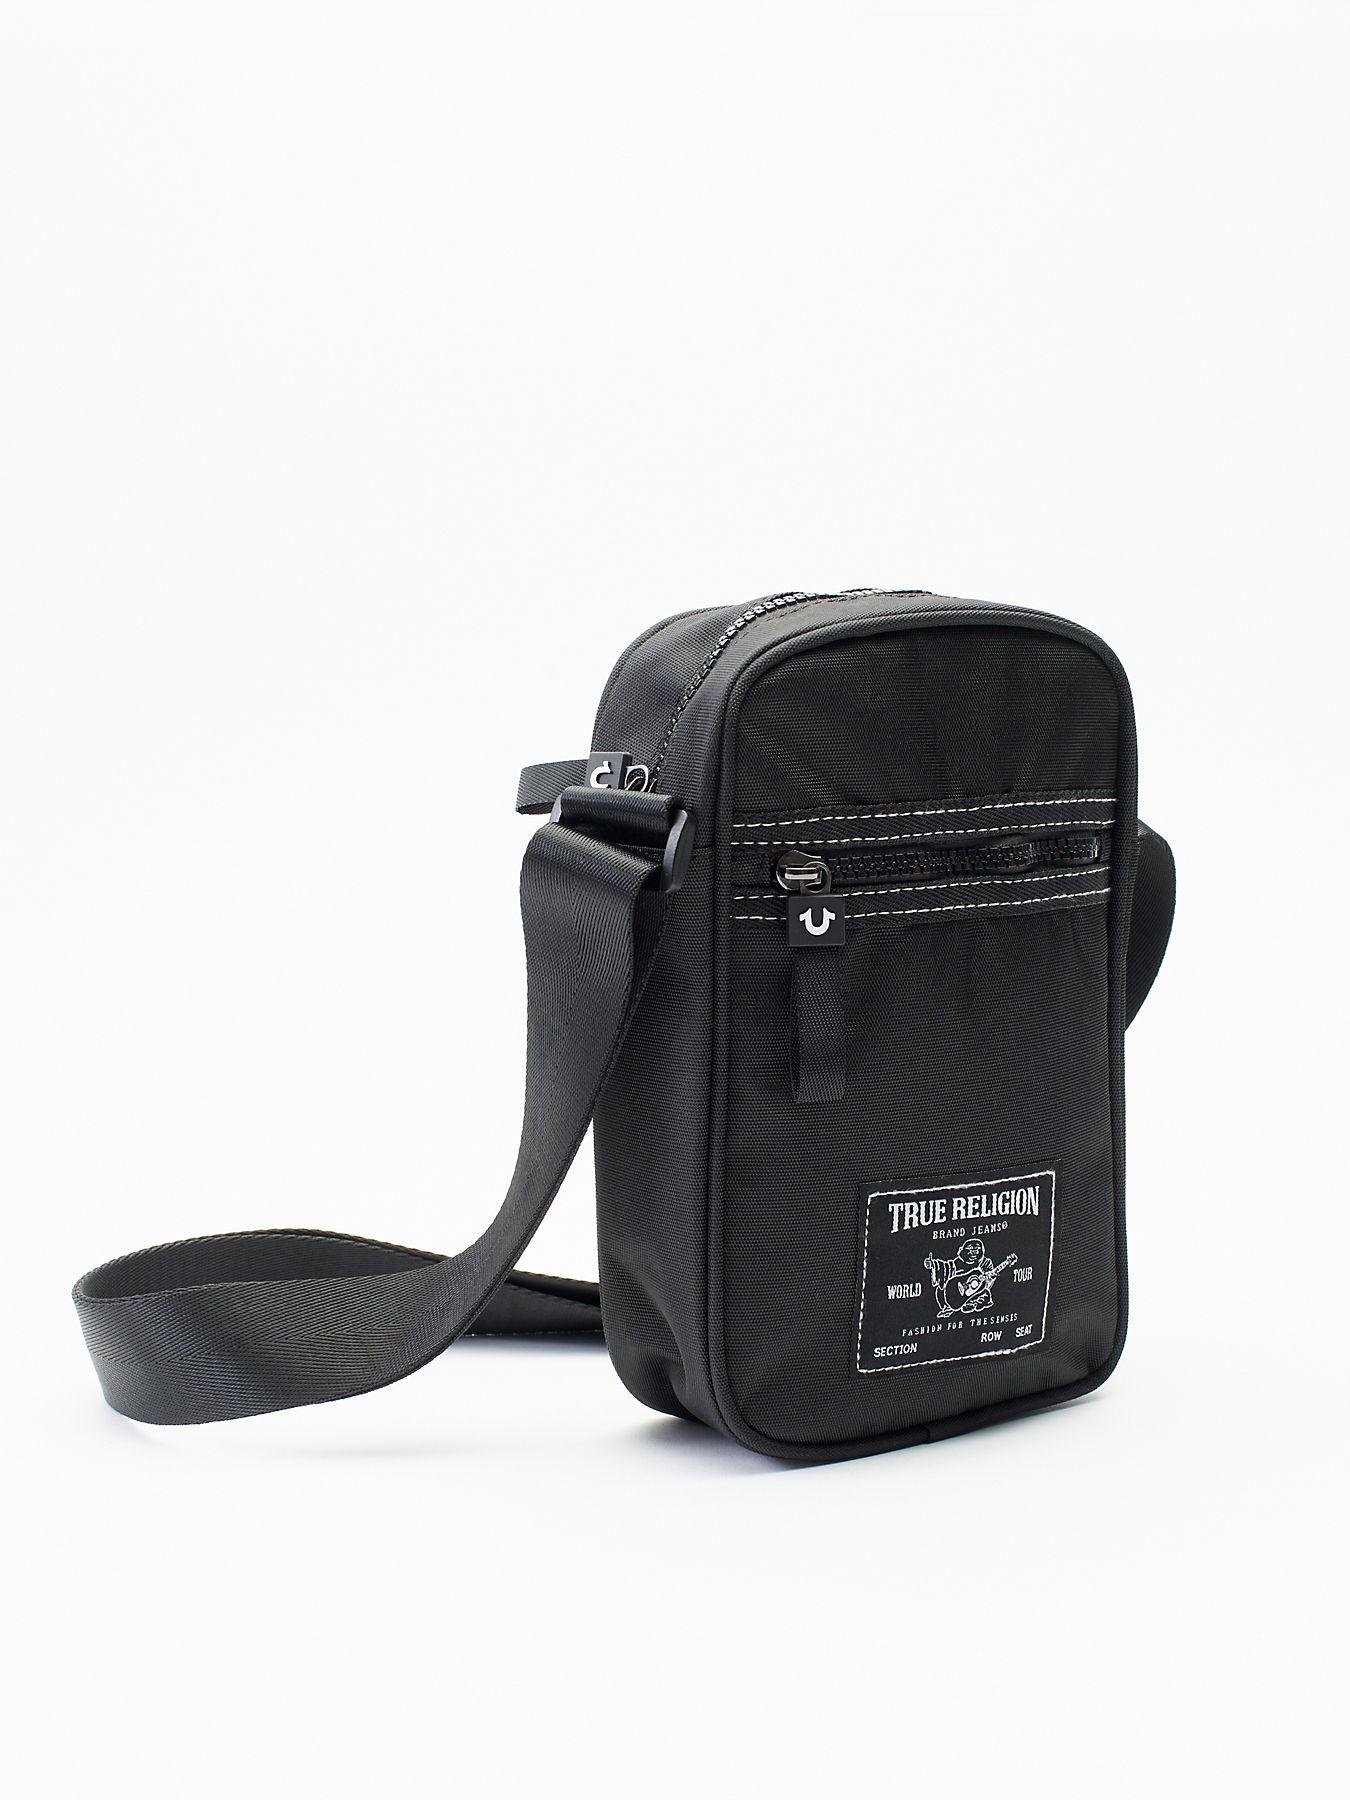 True Religion Crossbody Shoulder Bag Black | eBay